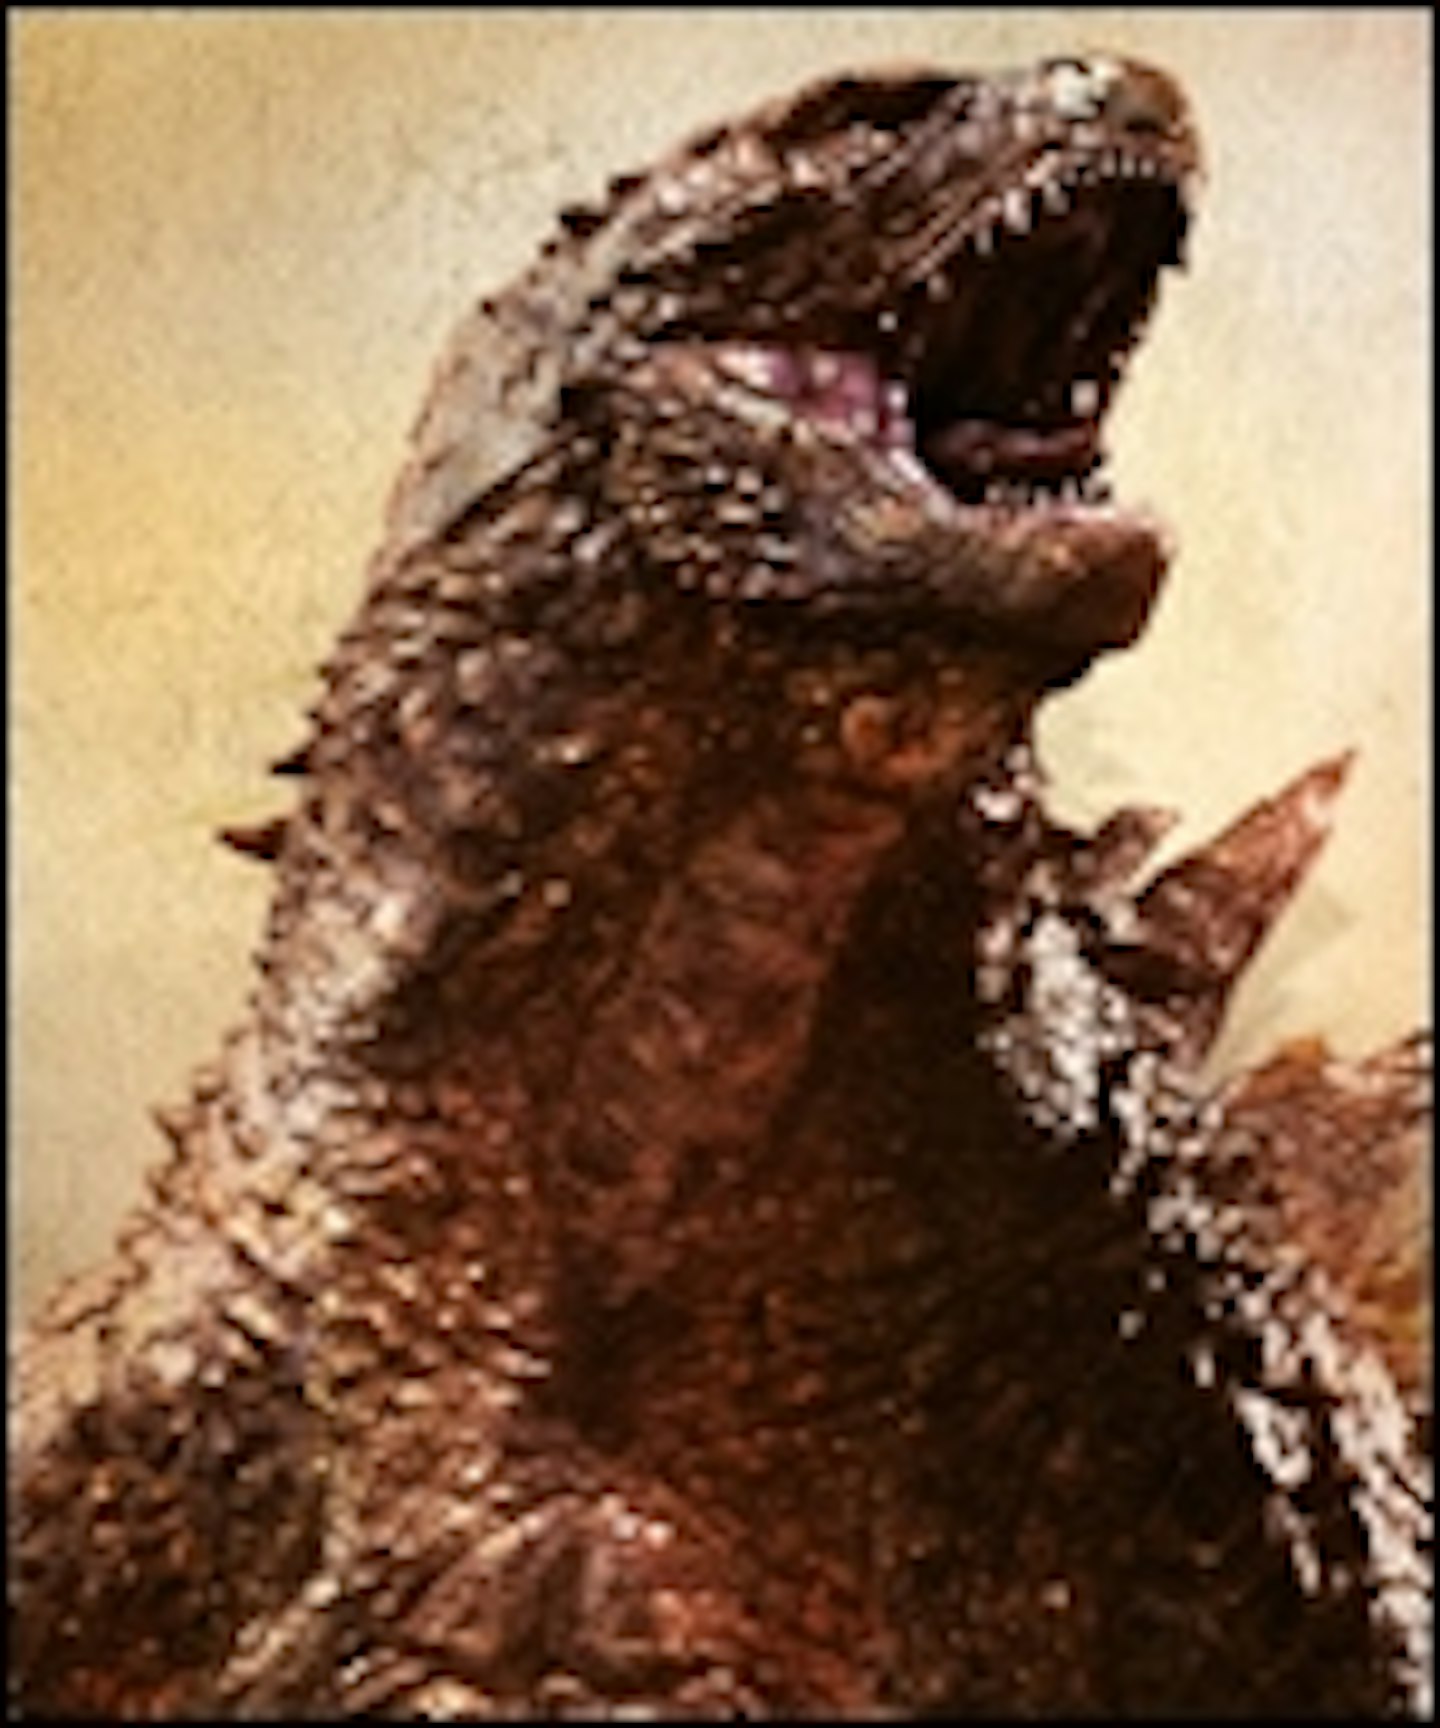 Max Borenstein On To Write Godzilla Sequel